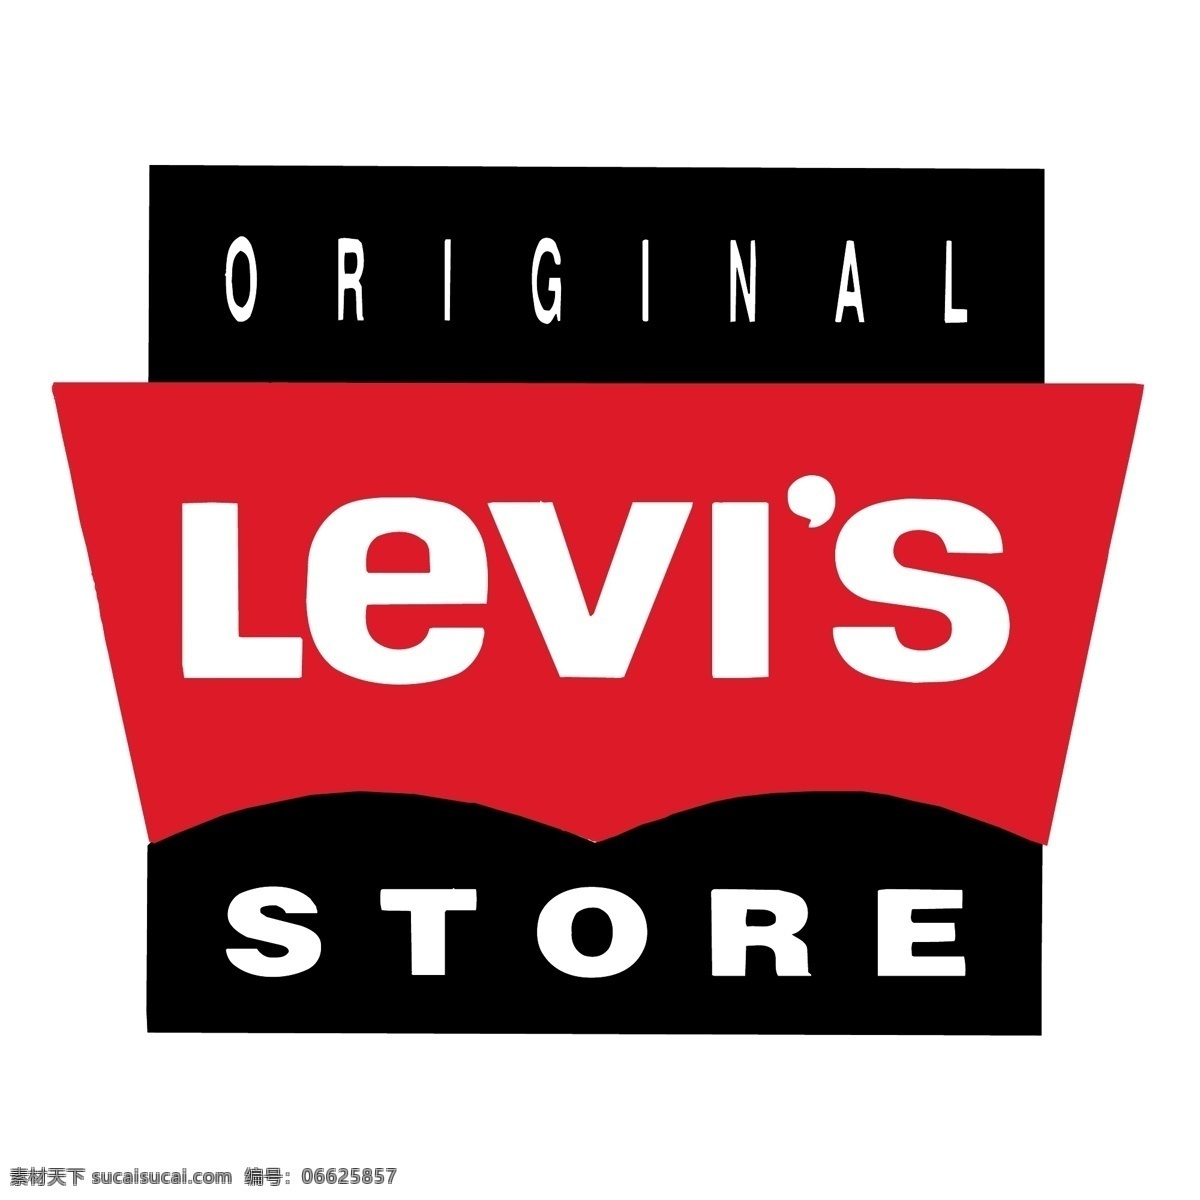 李维斯原店 矢量标志下载 免费矢量标识 商标 品牌标识 标识 矢量 免费 品牌 公司 白色